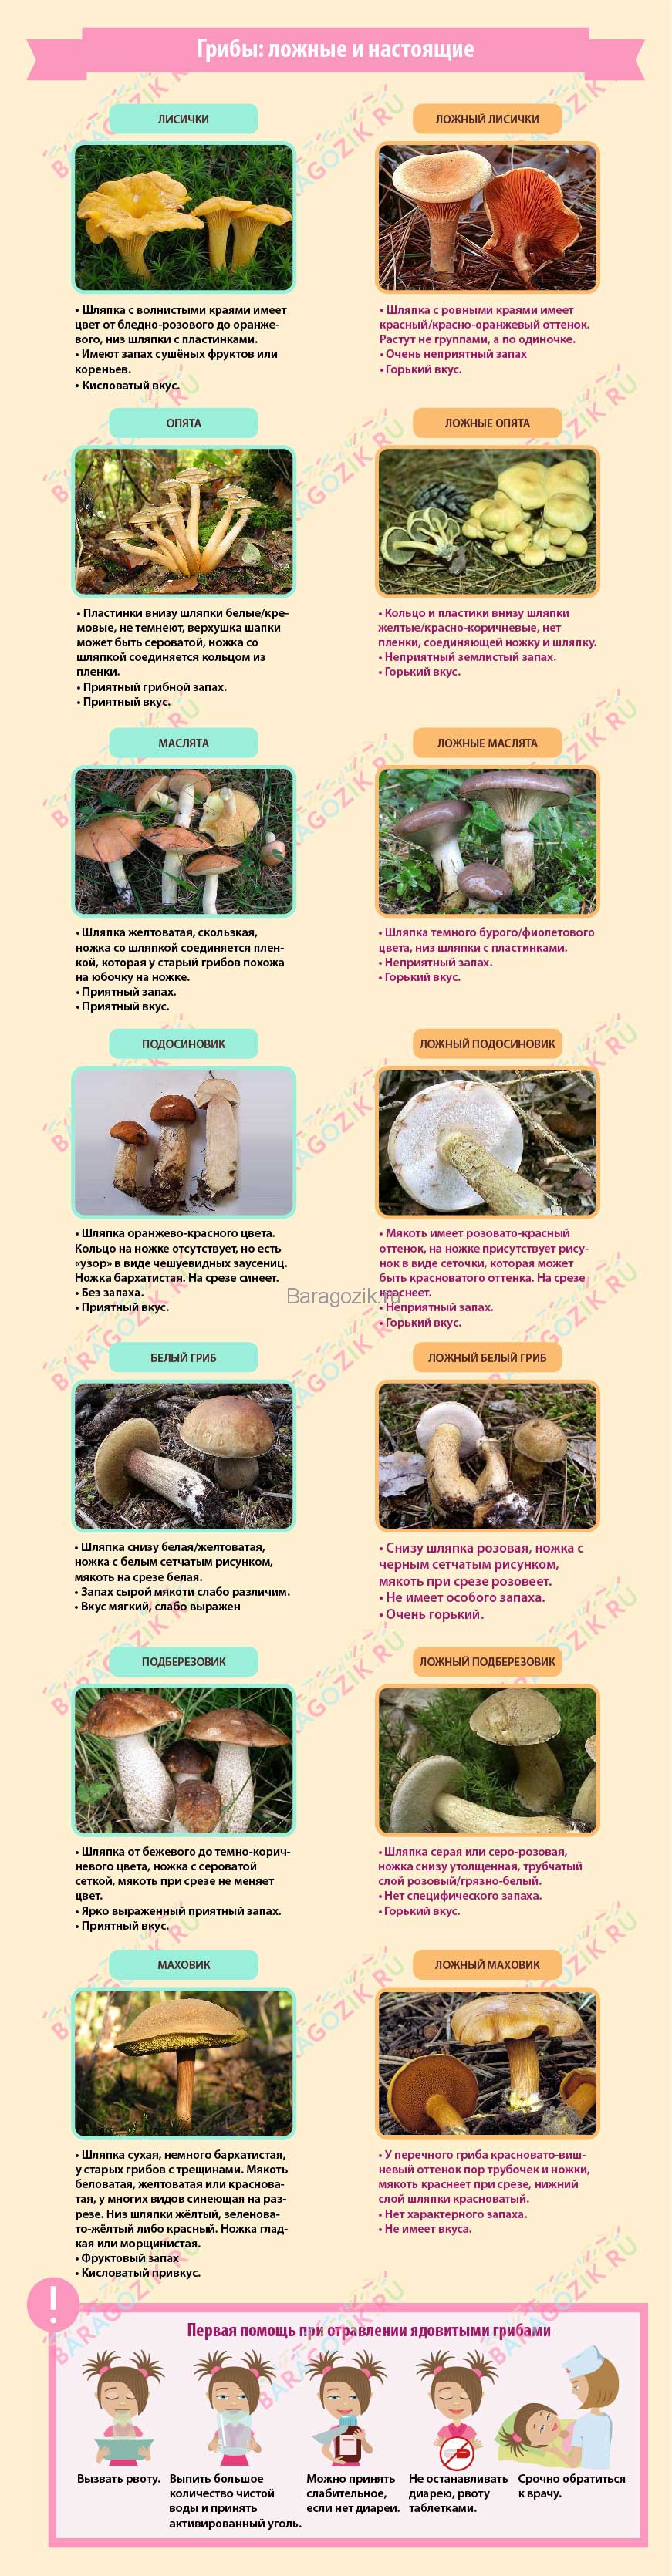 съедобные грибы и их несъедобные двойники